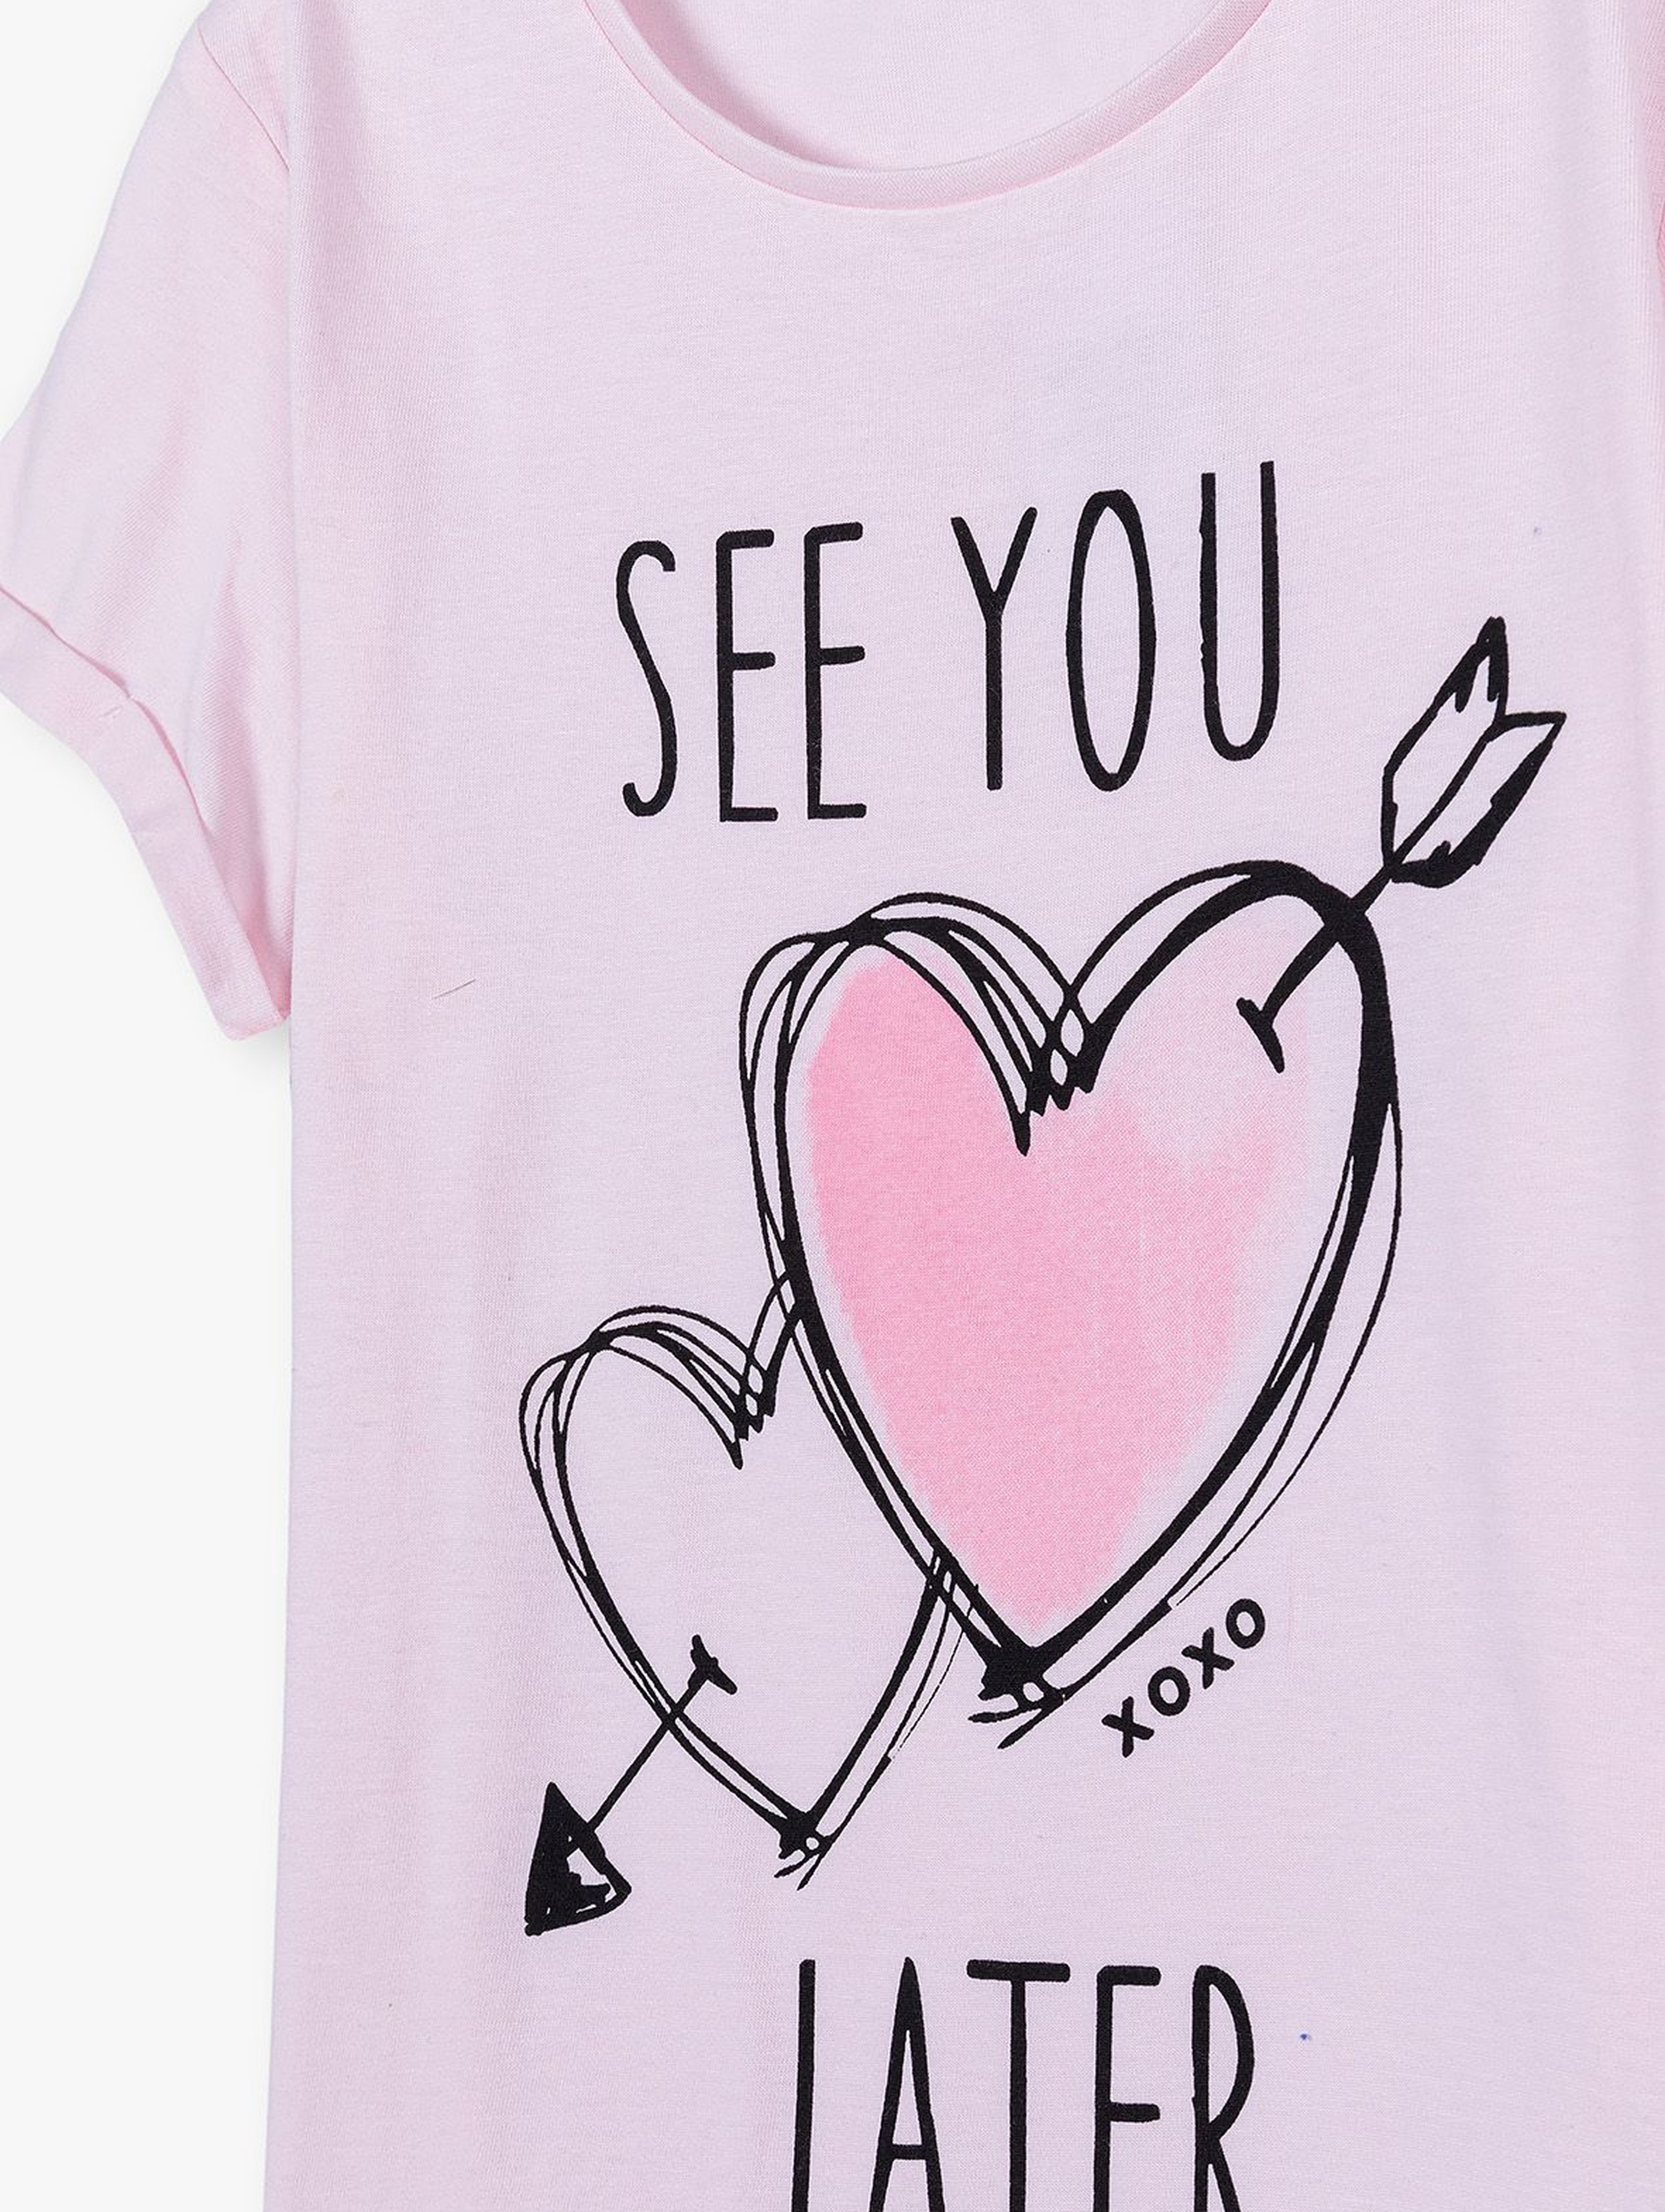 Różowy wiązany t-shirt dla dziewczynki